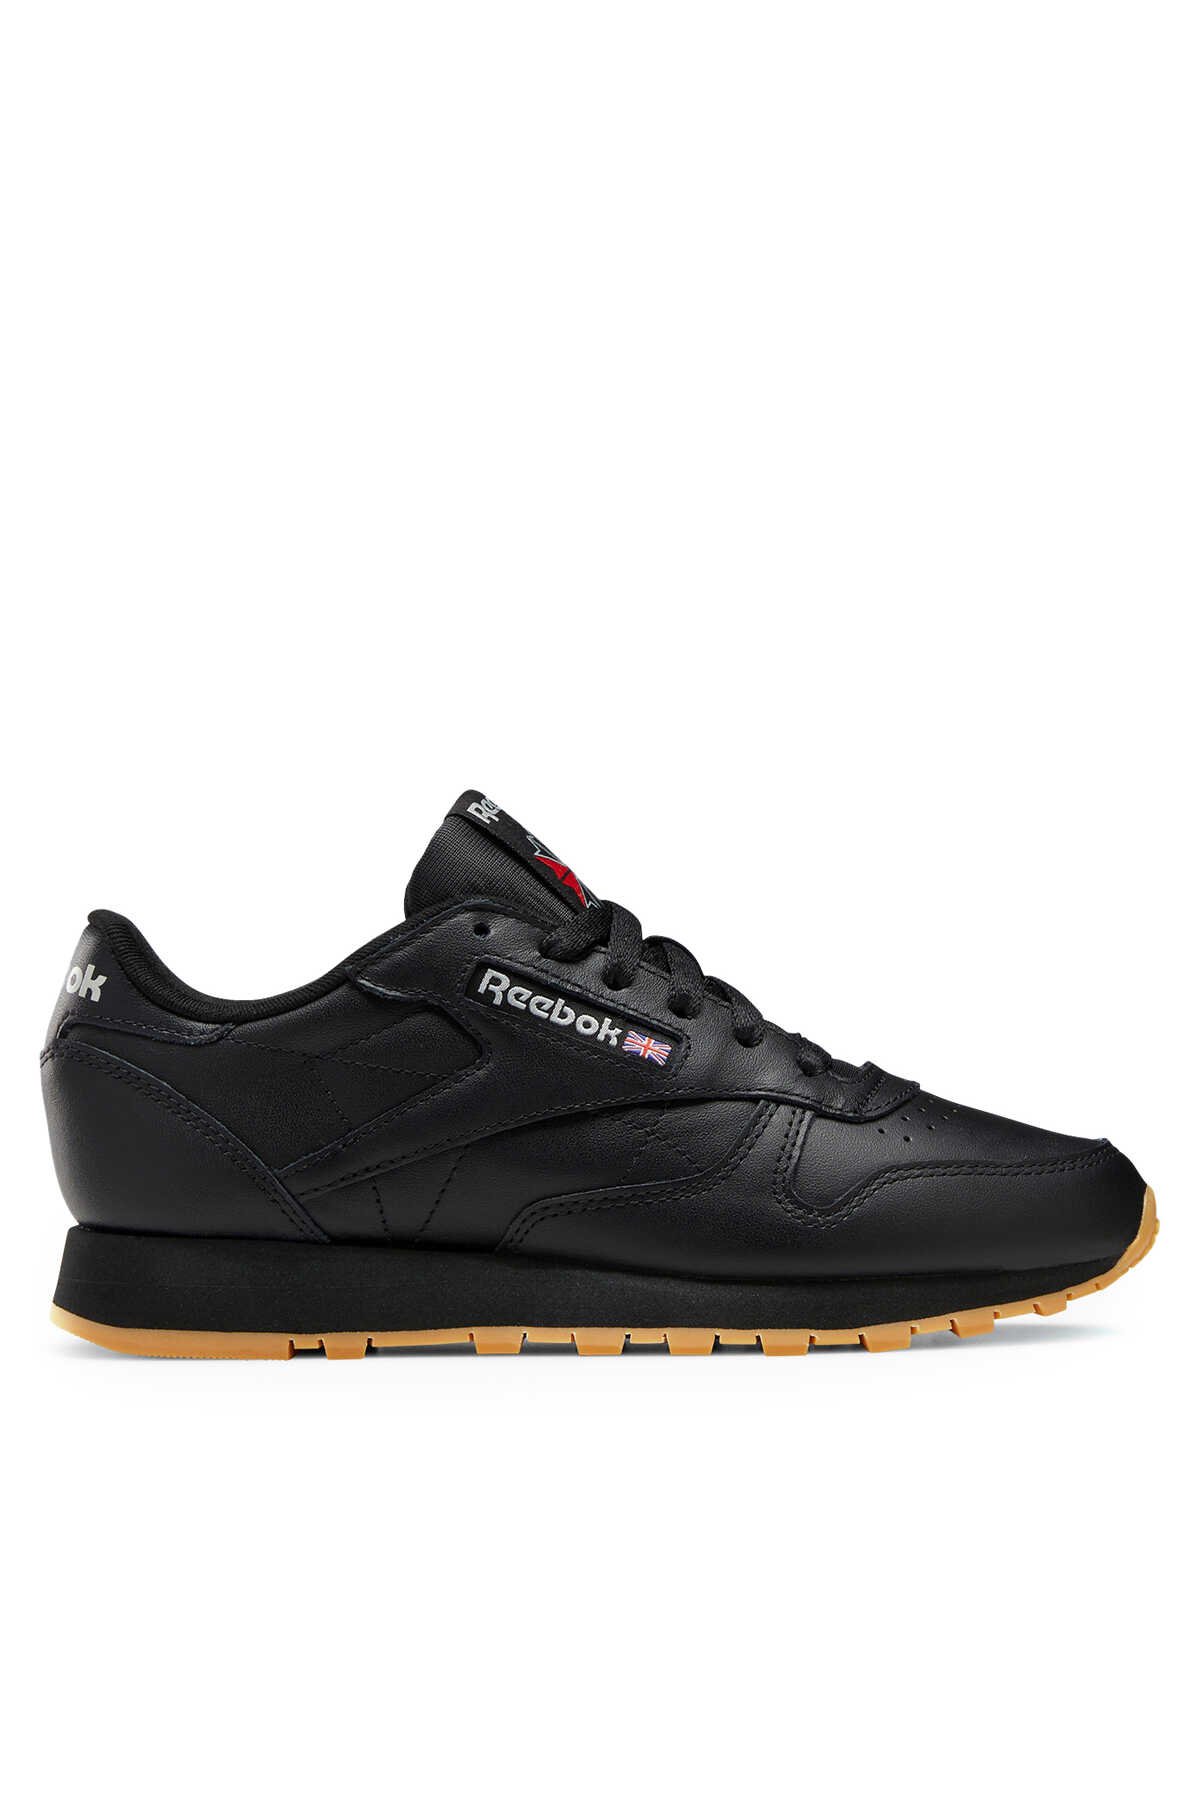 Reebok - Reebok CLASSIC LEATHER Kadın Sneaker Ayakkabı Siyah_0